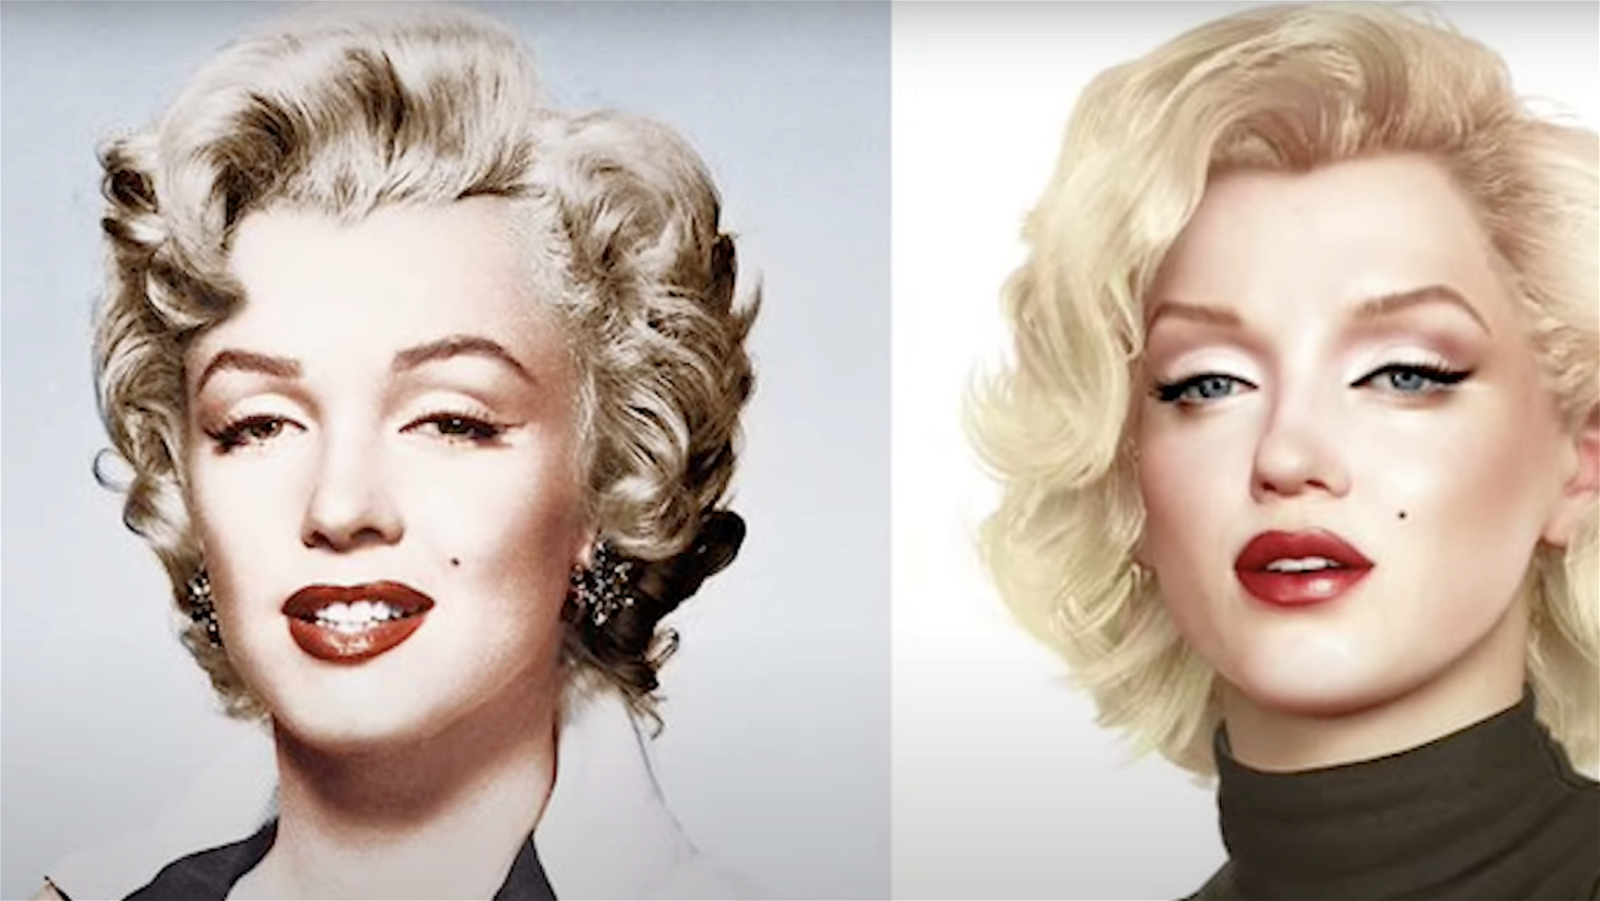 Immagine di Marilyn Monroe e la controversa etica della resurrezione digitale!